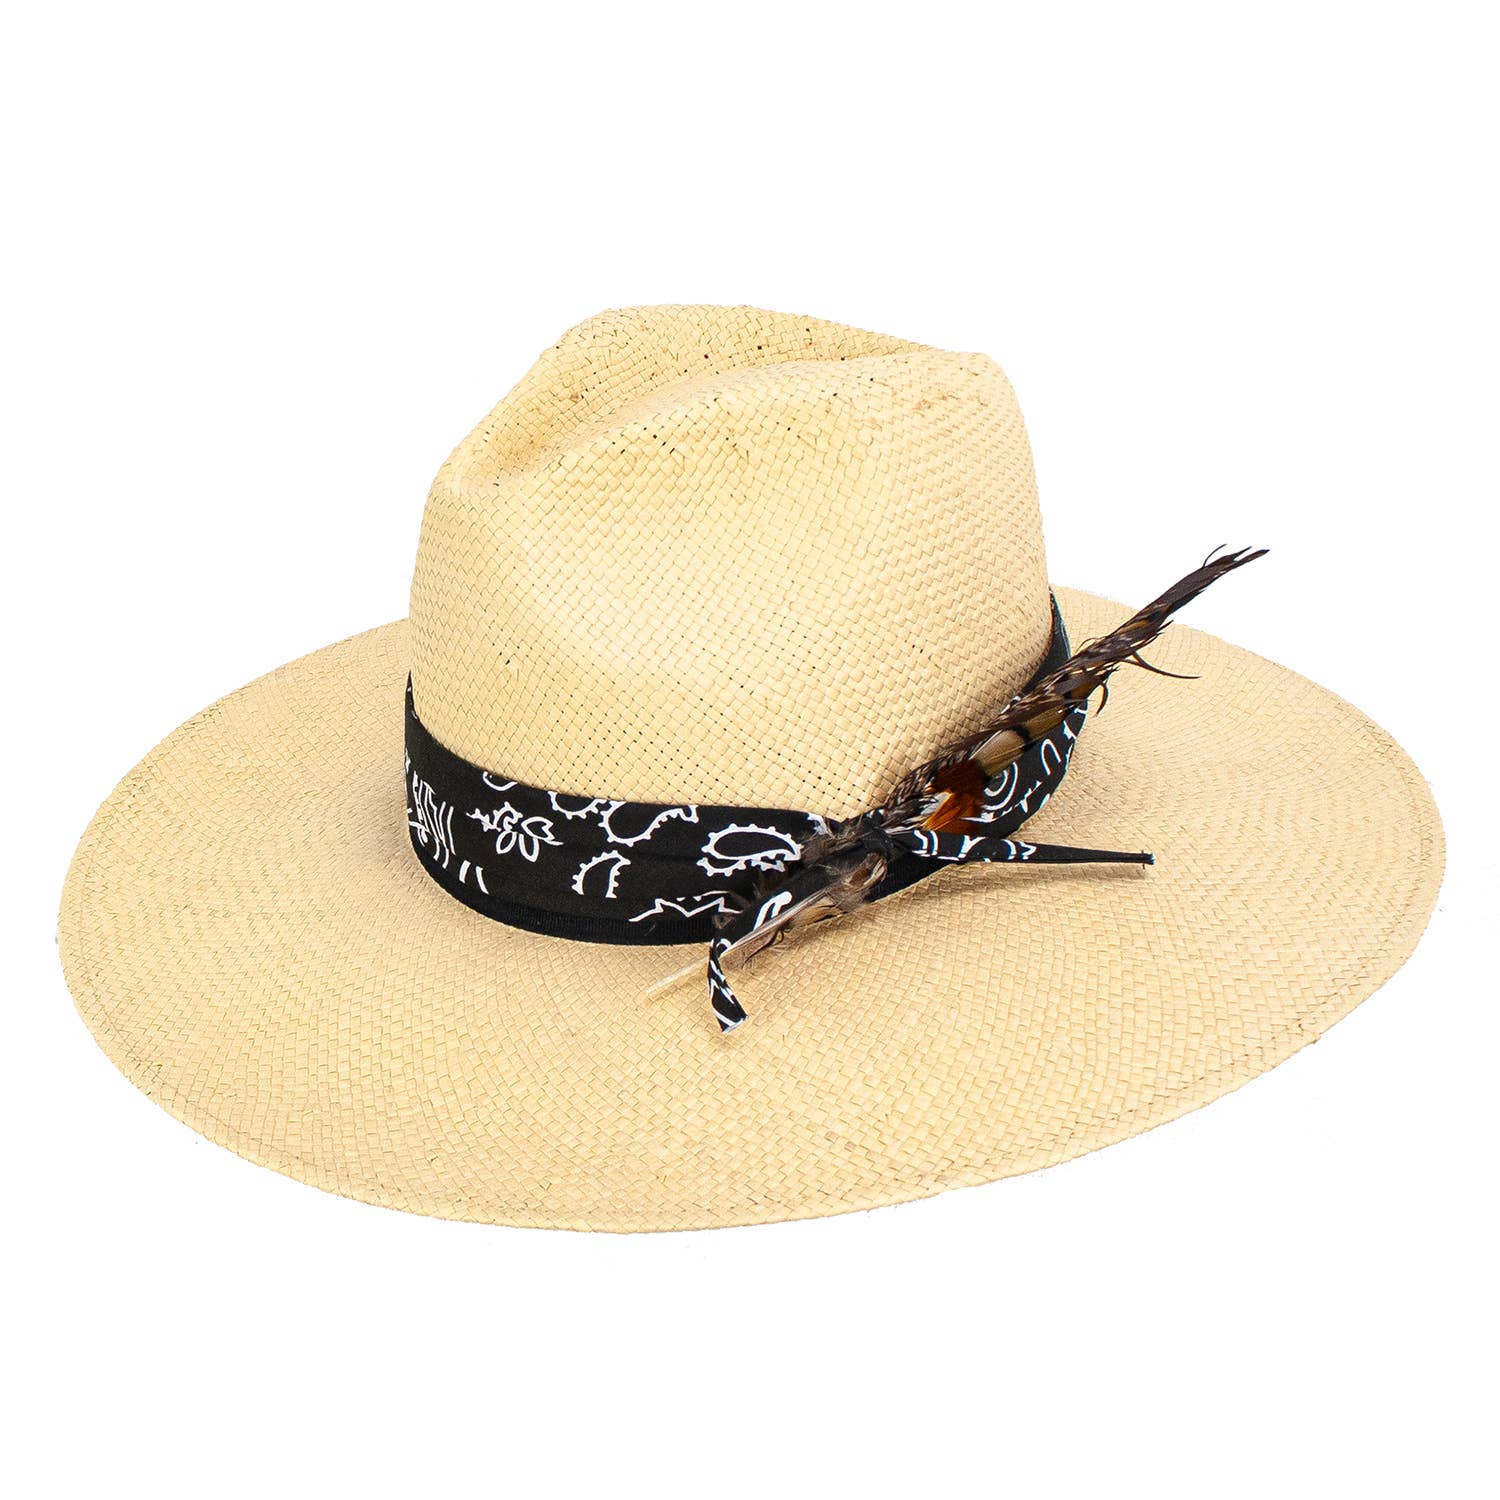 Spencer Natural Straw Resort Hat